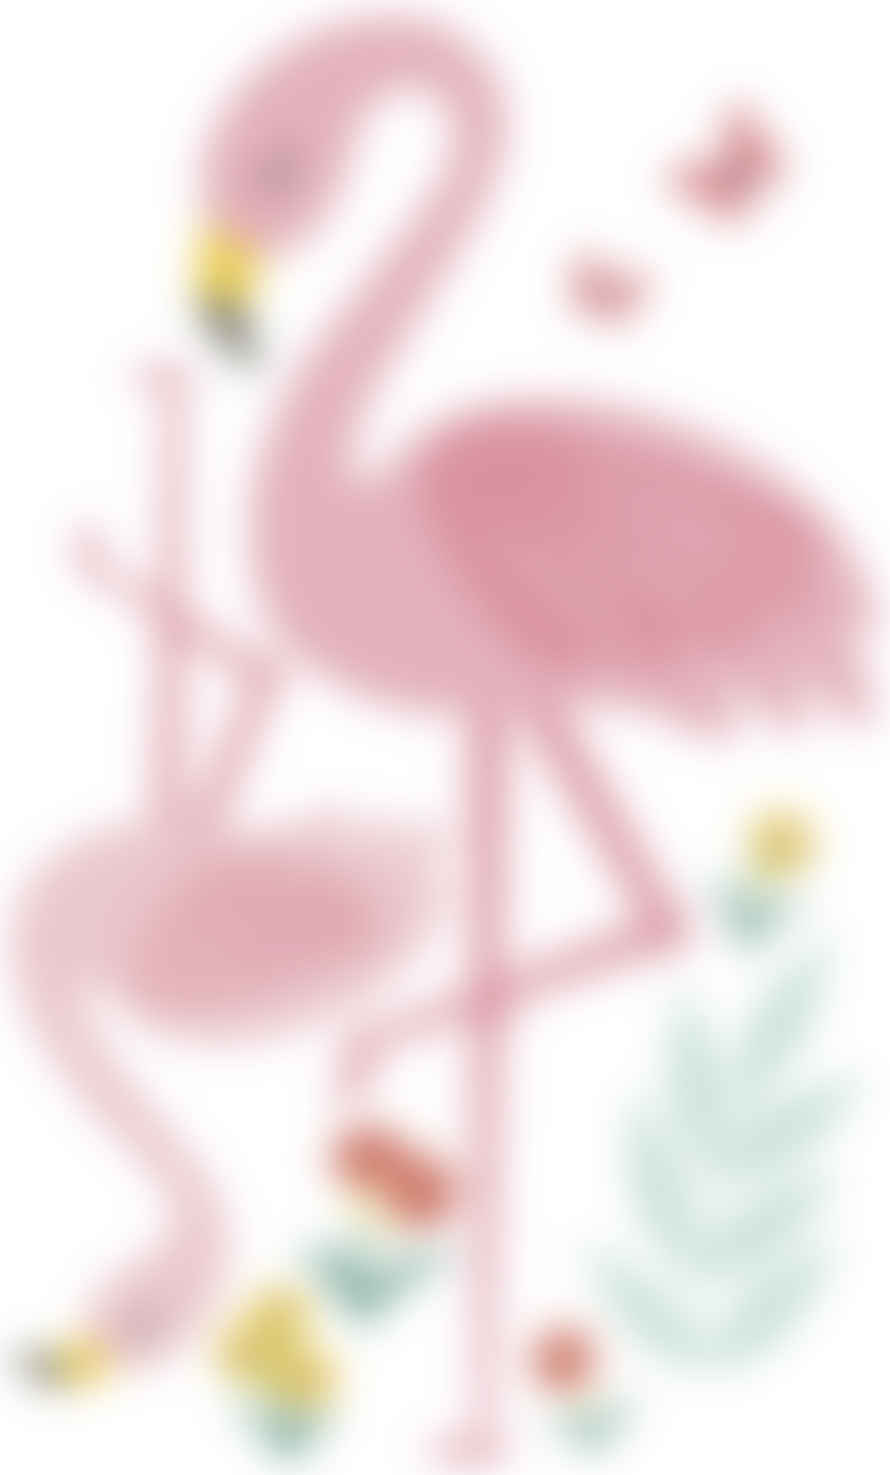 LILIPINSO Sticker Murale Flamingo Rosa - Lilipinso